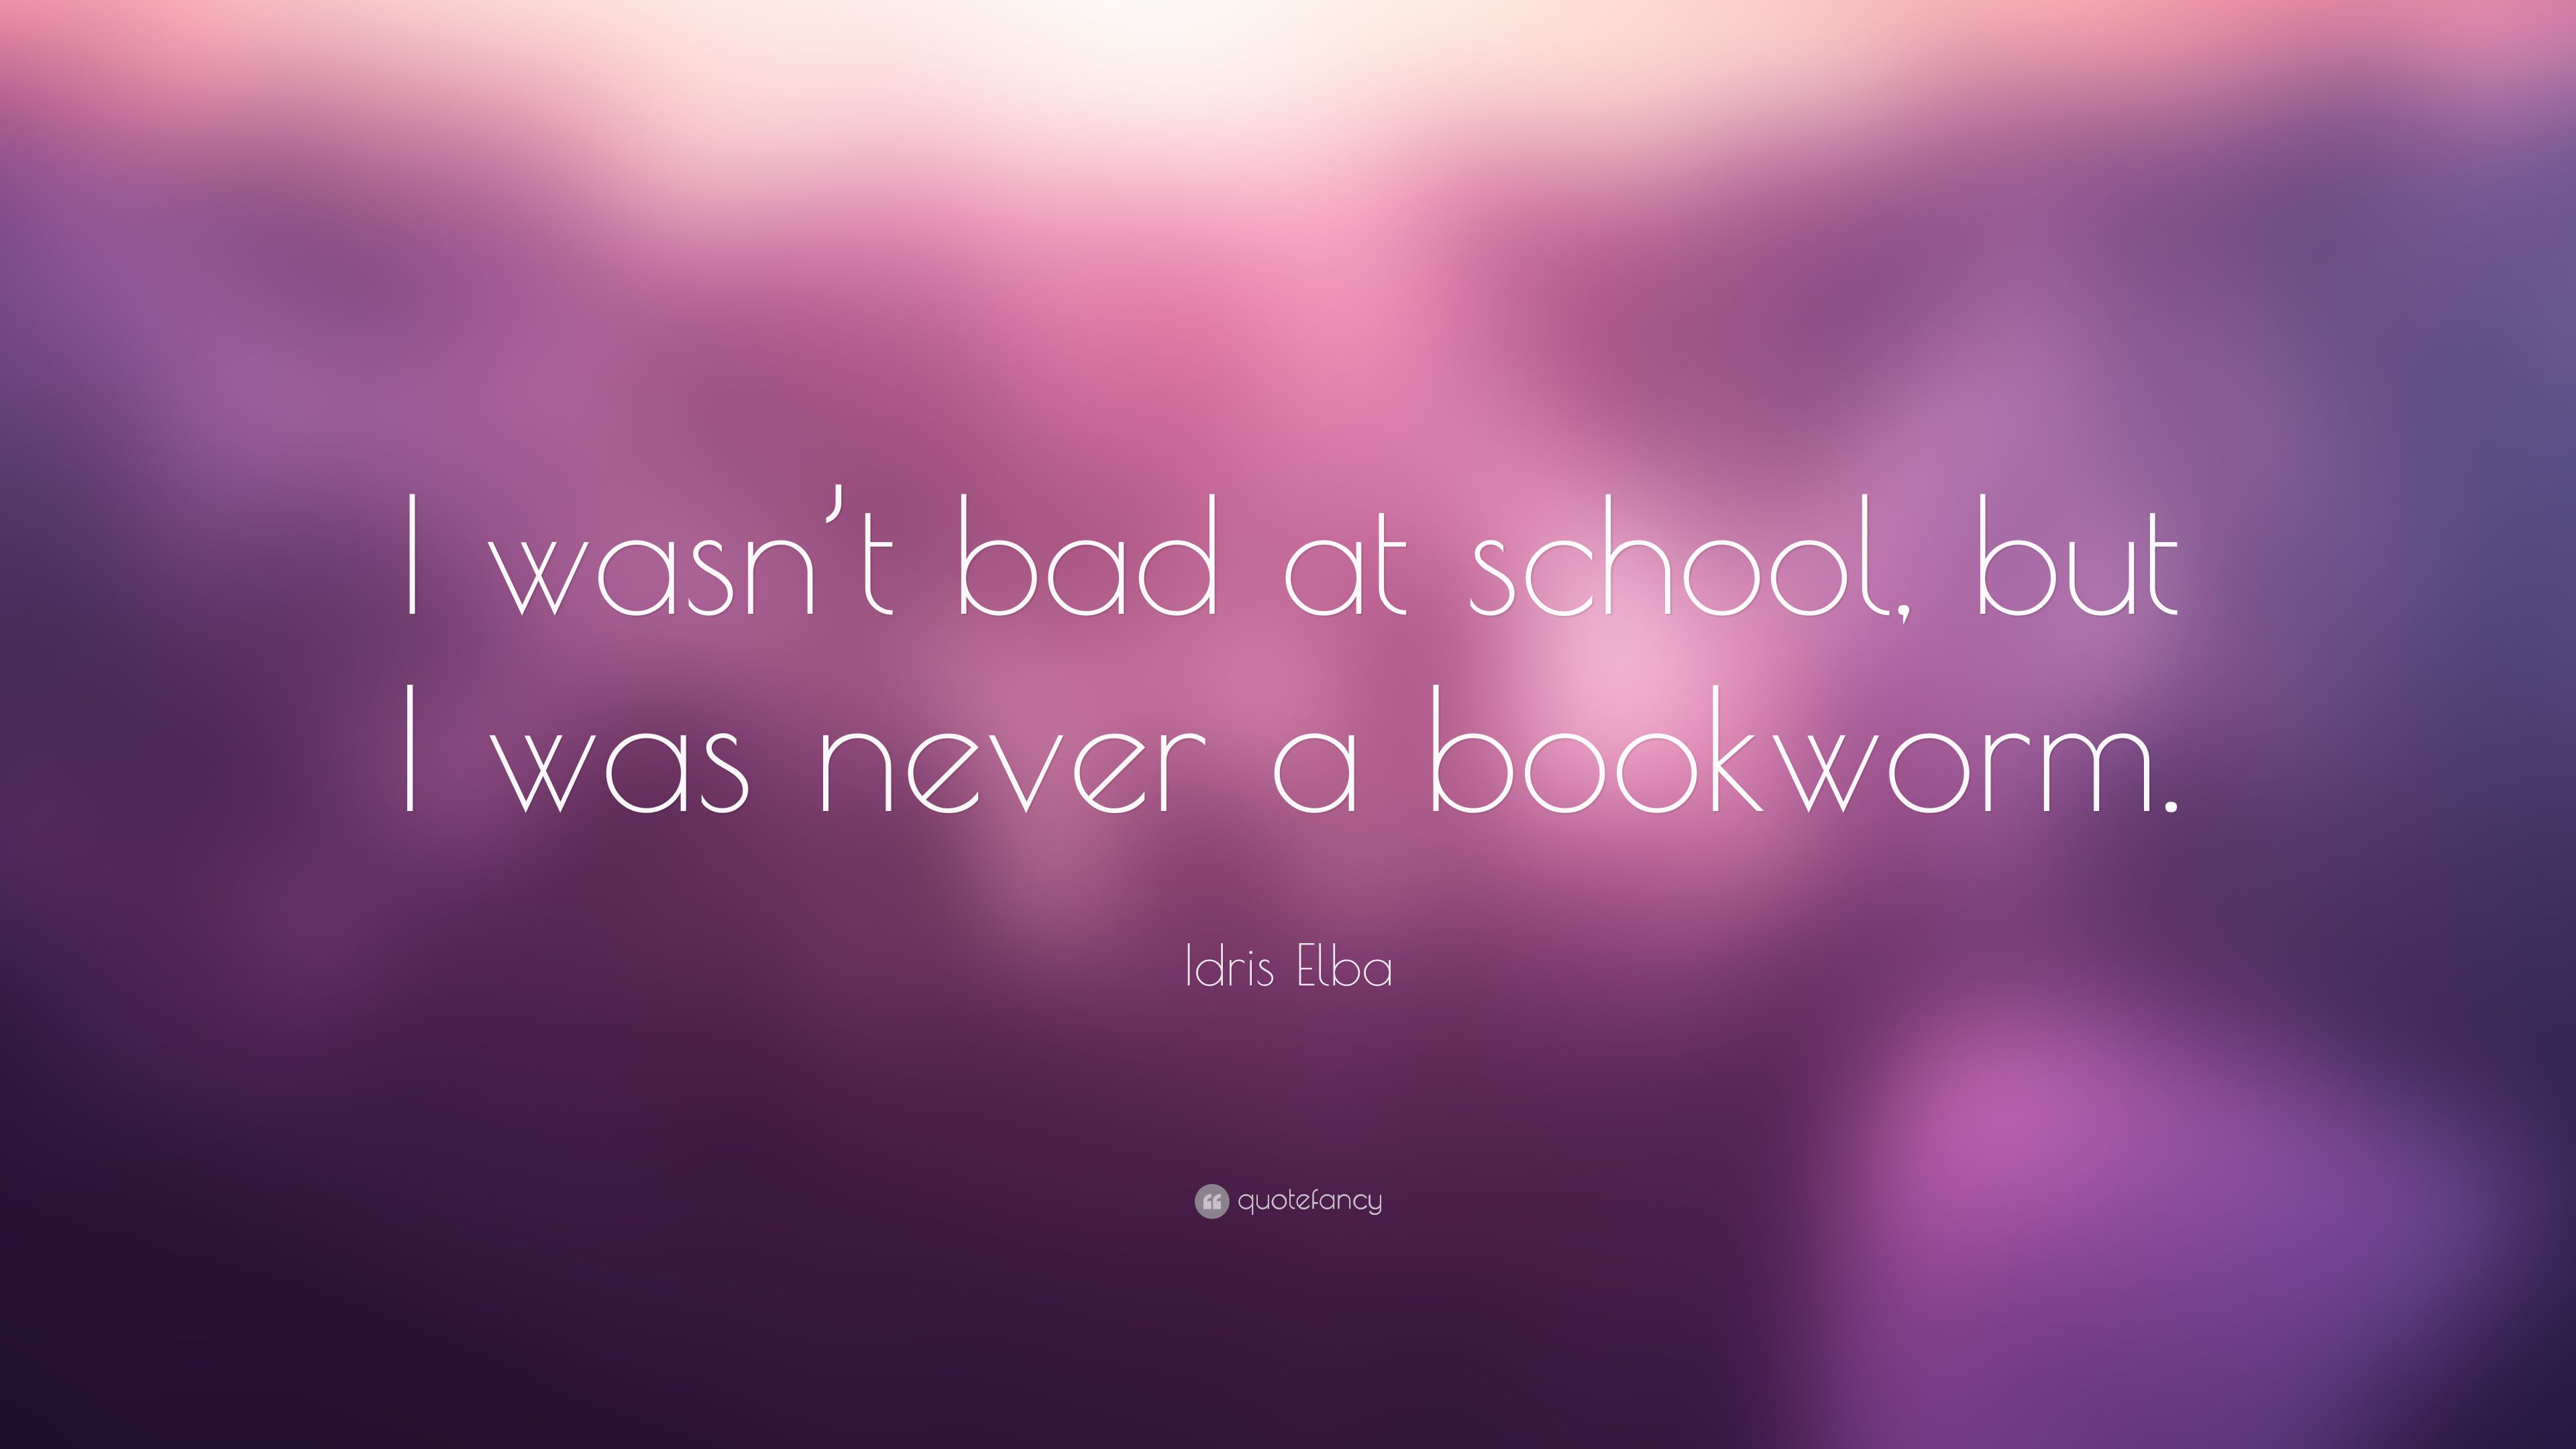 Idris Elba Quote: “I wasn't bad at school, but I was never a bookworm.” (7 wallpaper)